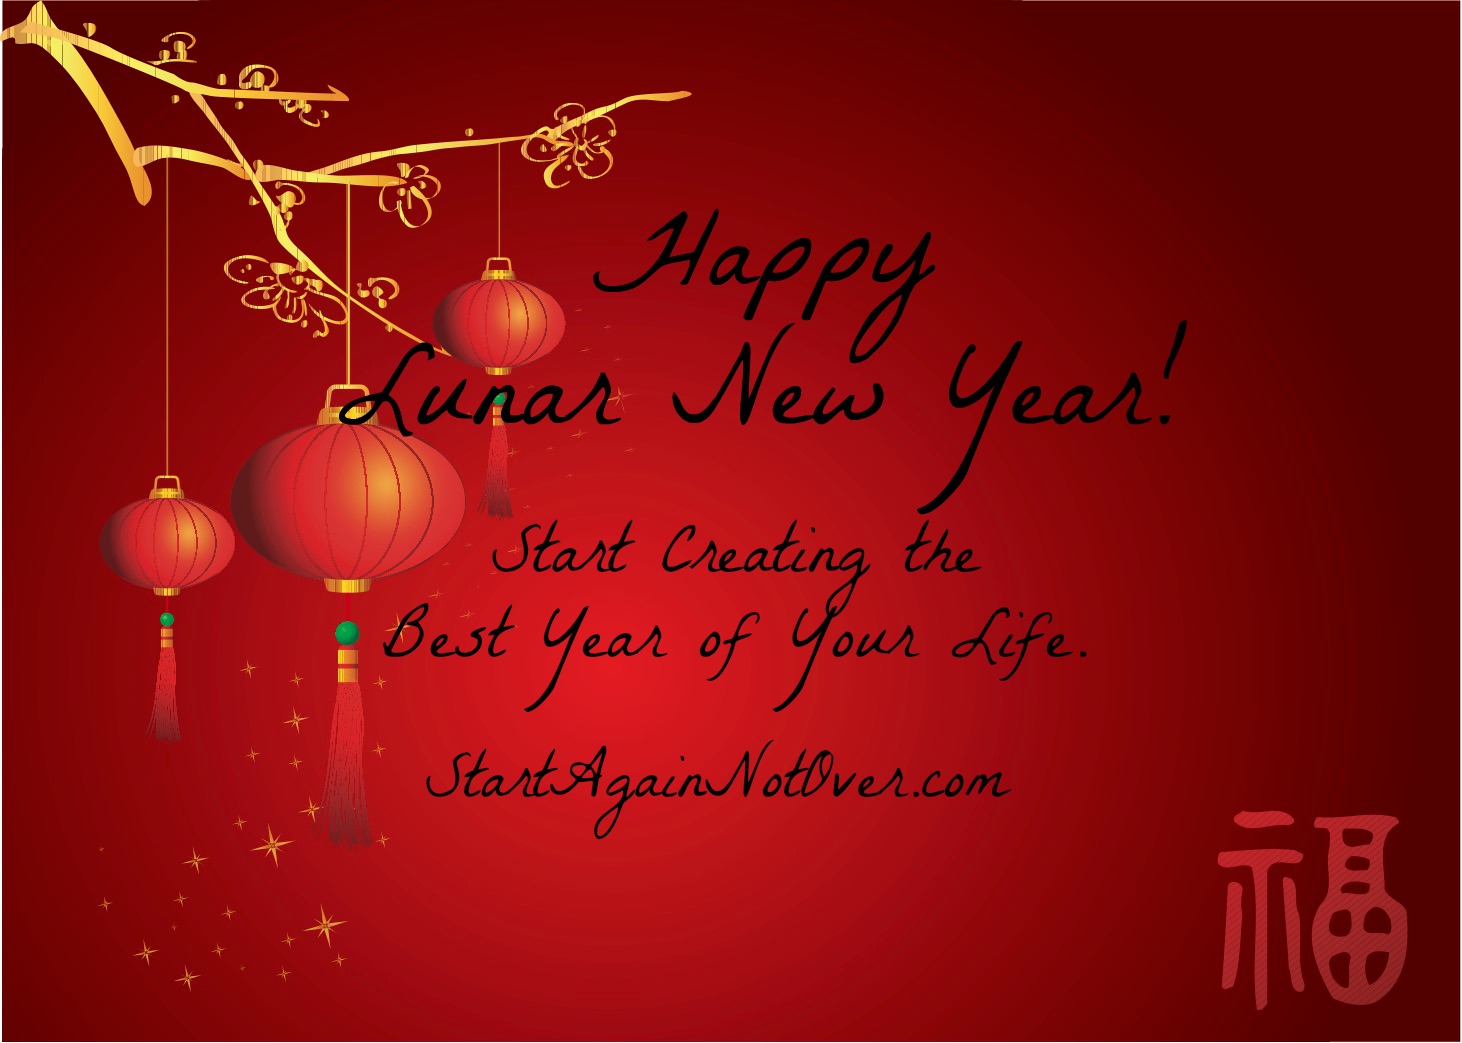 ¡Feliz Año Nuevo Lunar! ¡Empieza a crear el mejor año de tu vida!